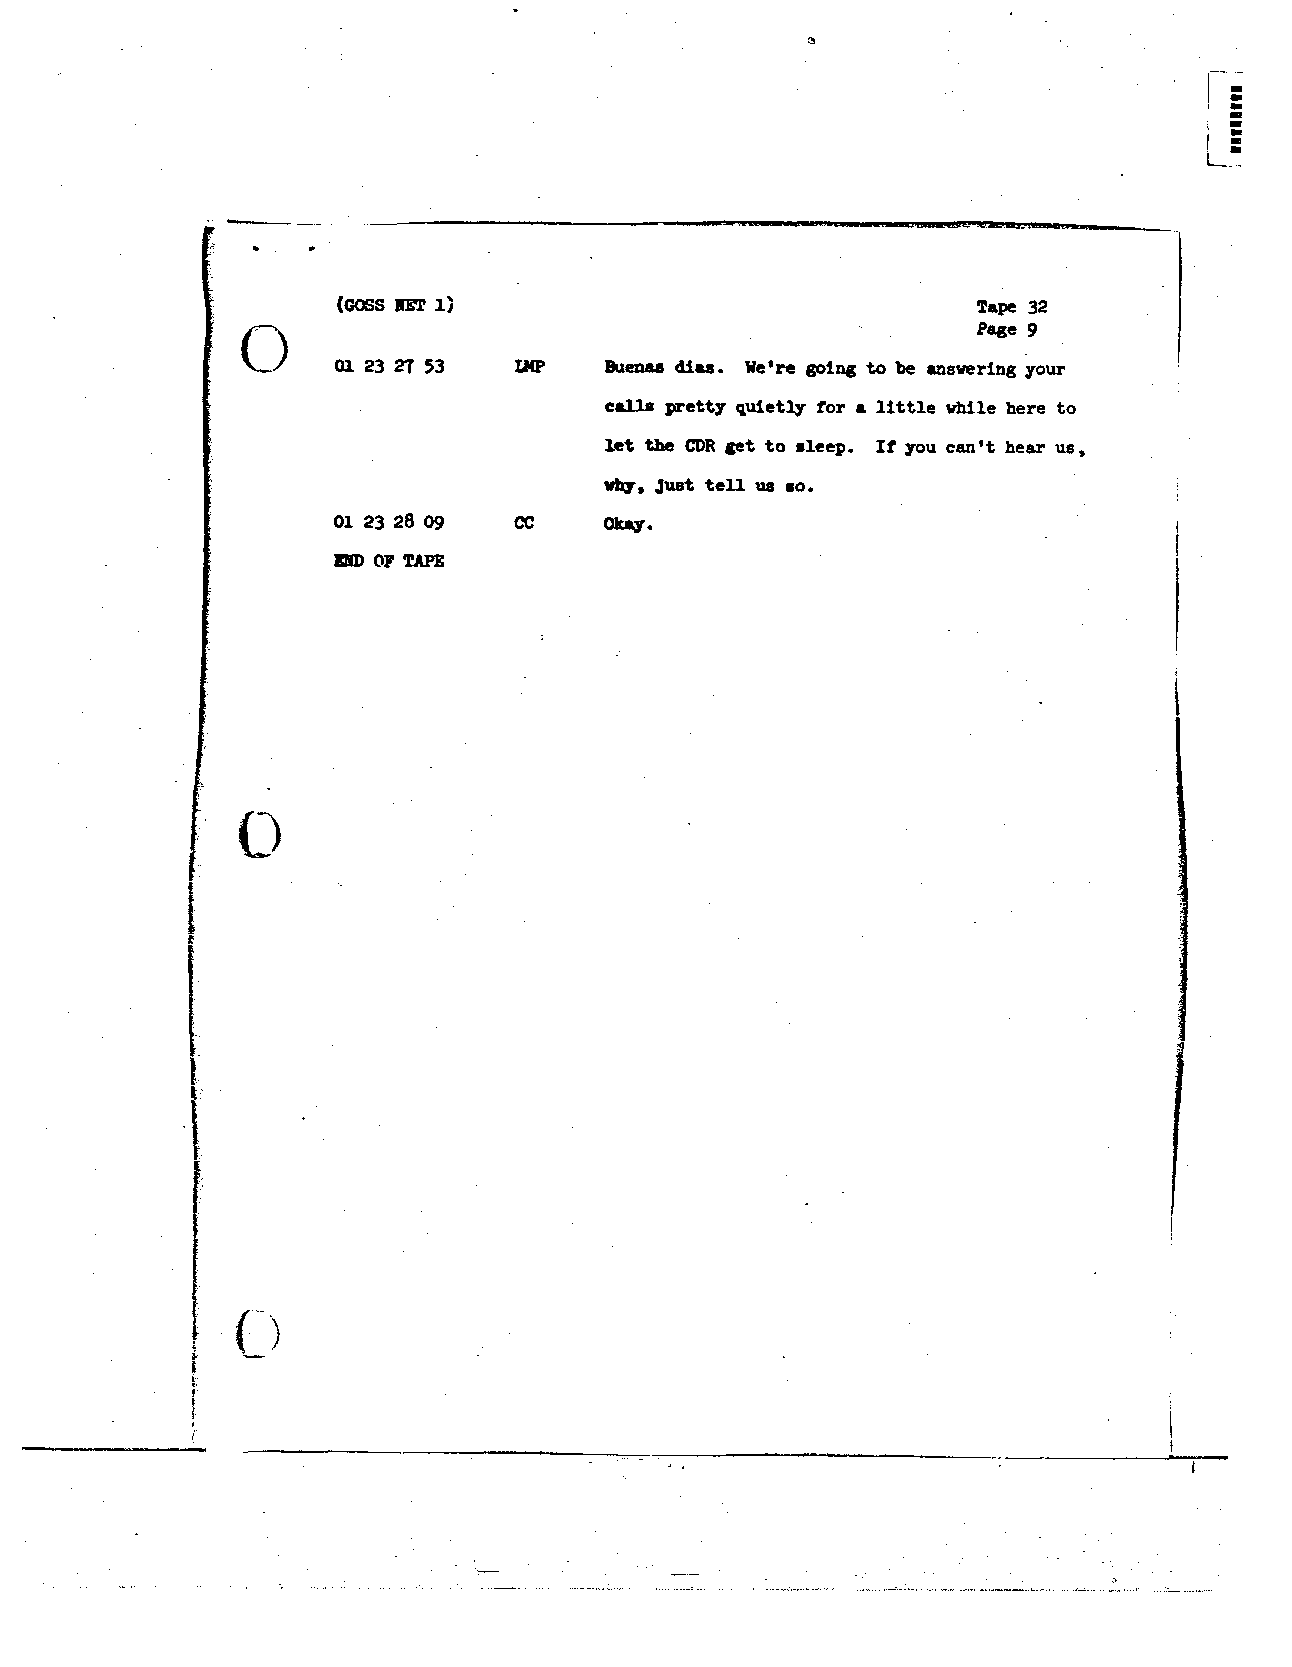 Page 253 of Apollo 8’s original transcript